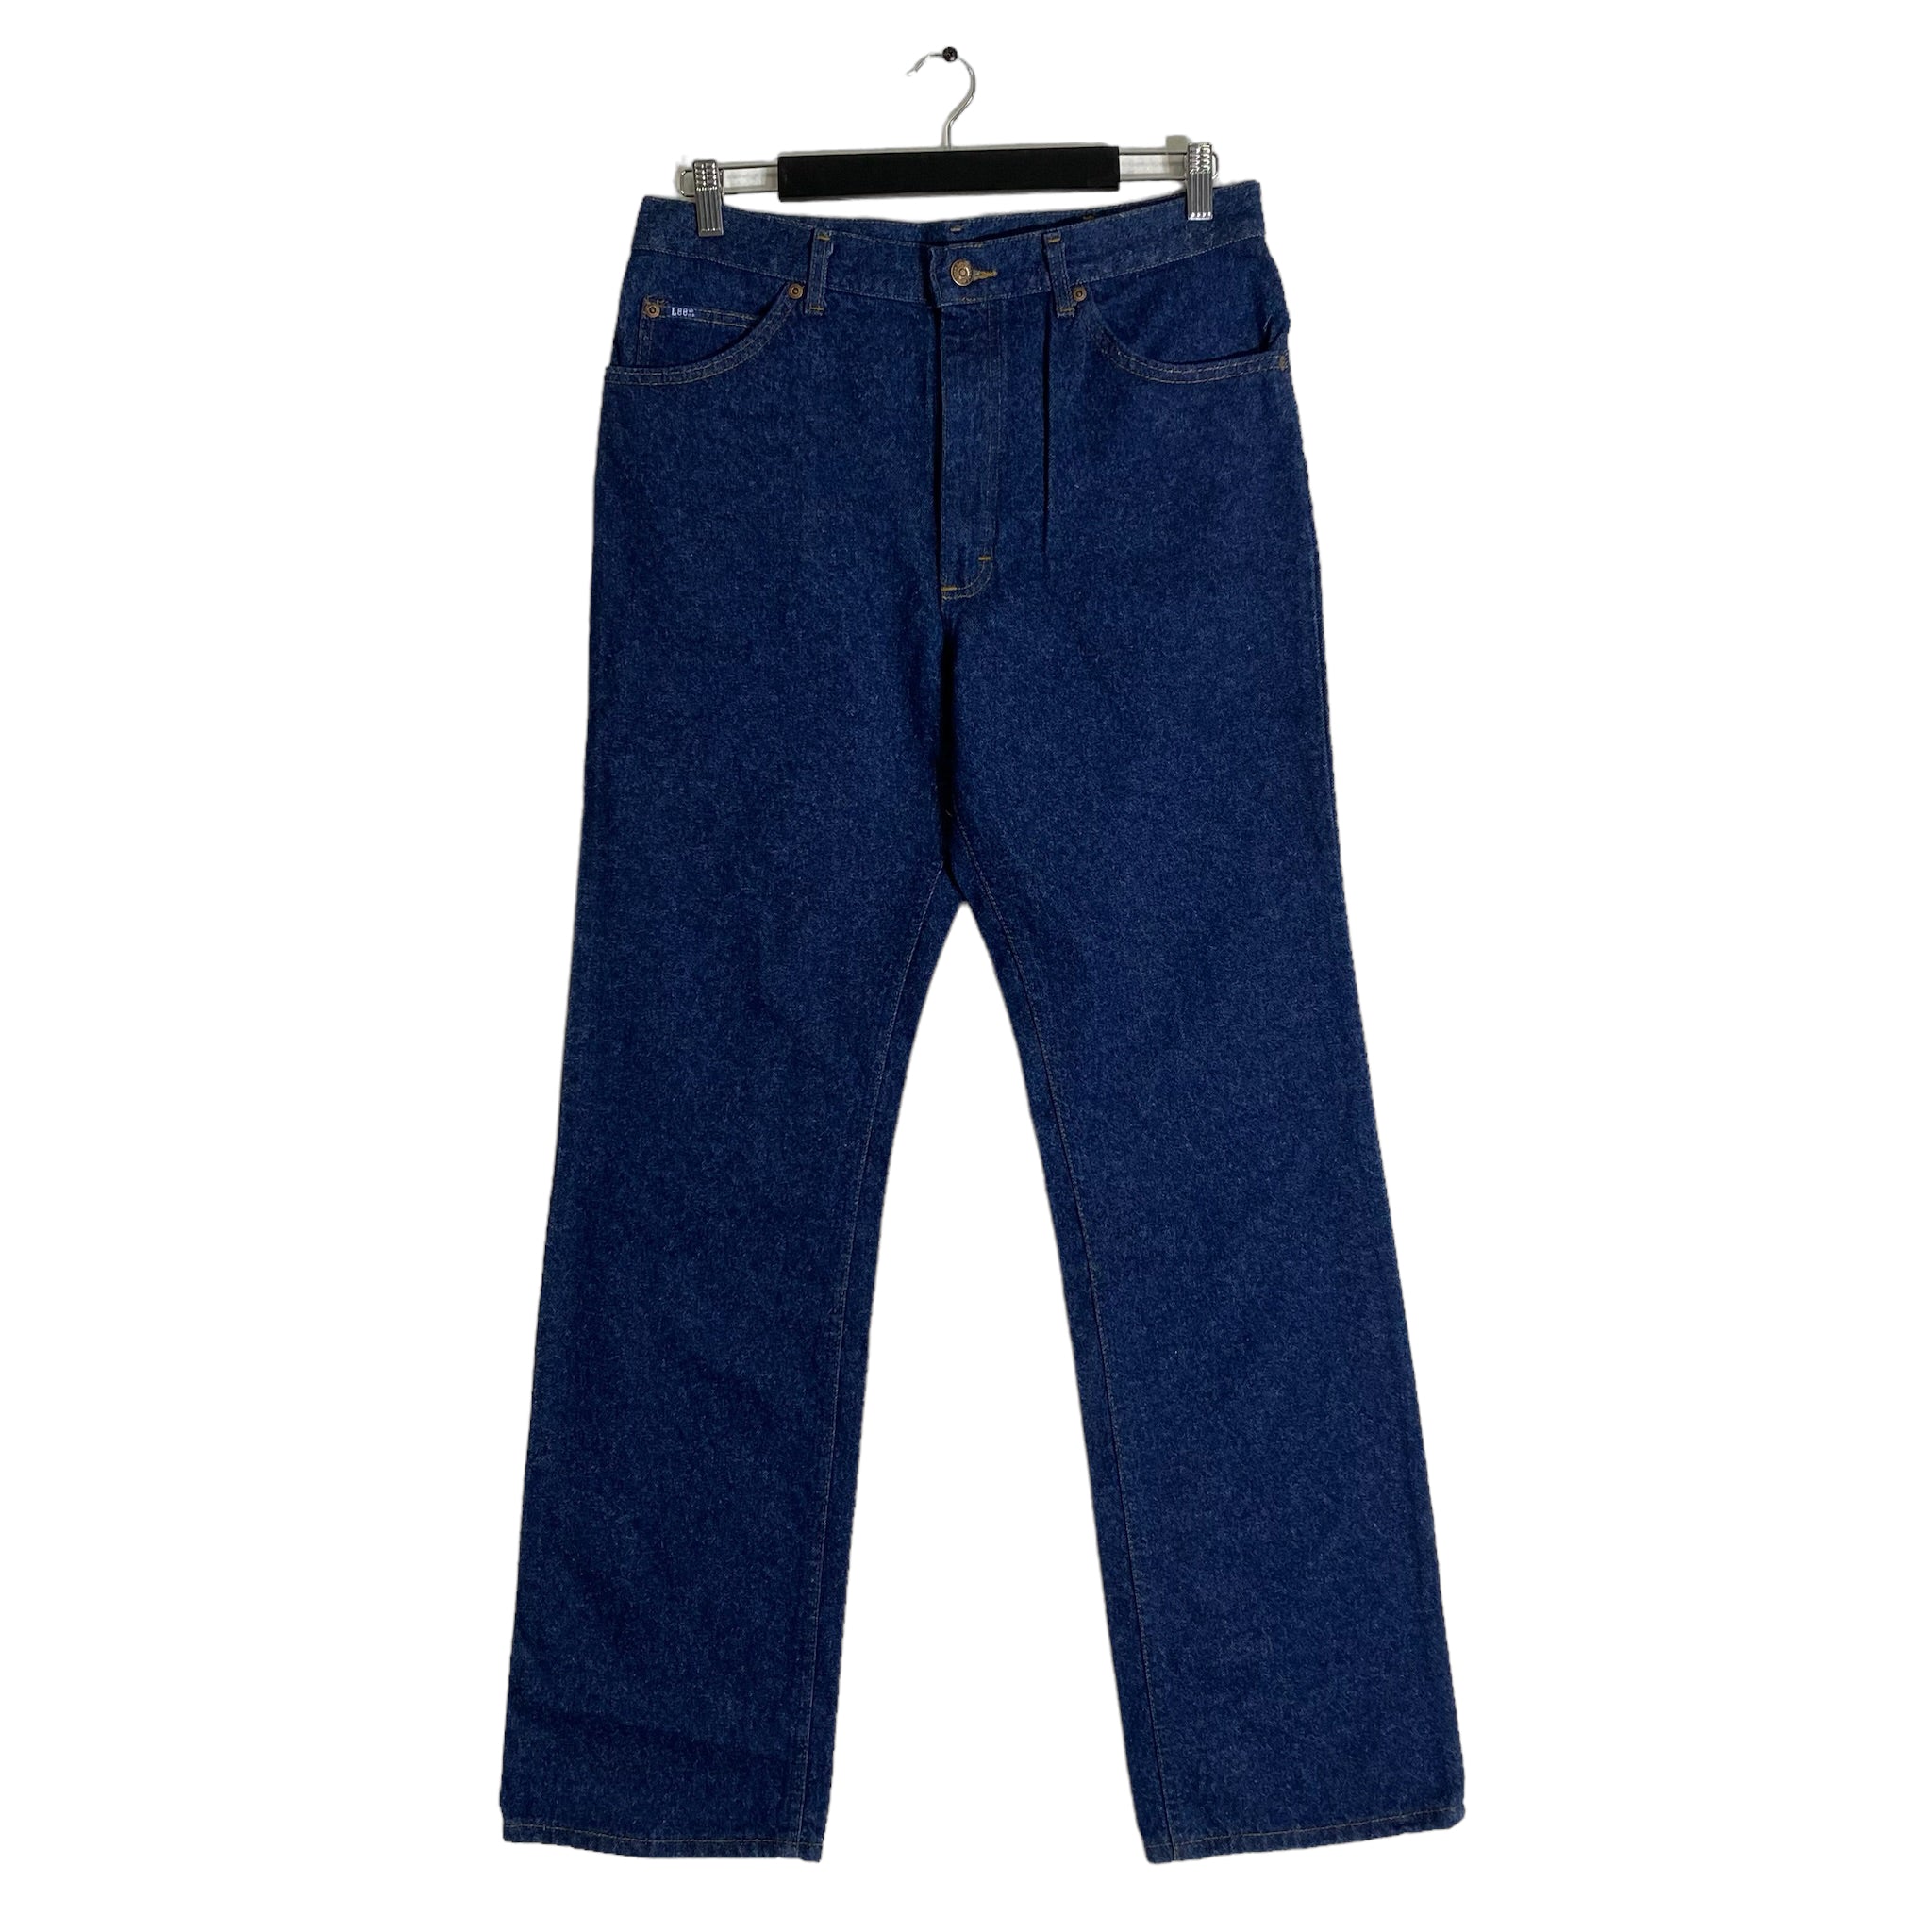 Vintage NWT Lee Denim Jeans